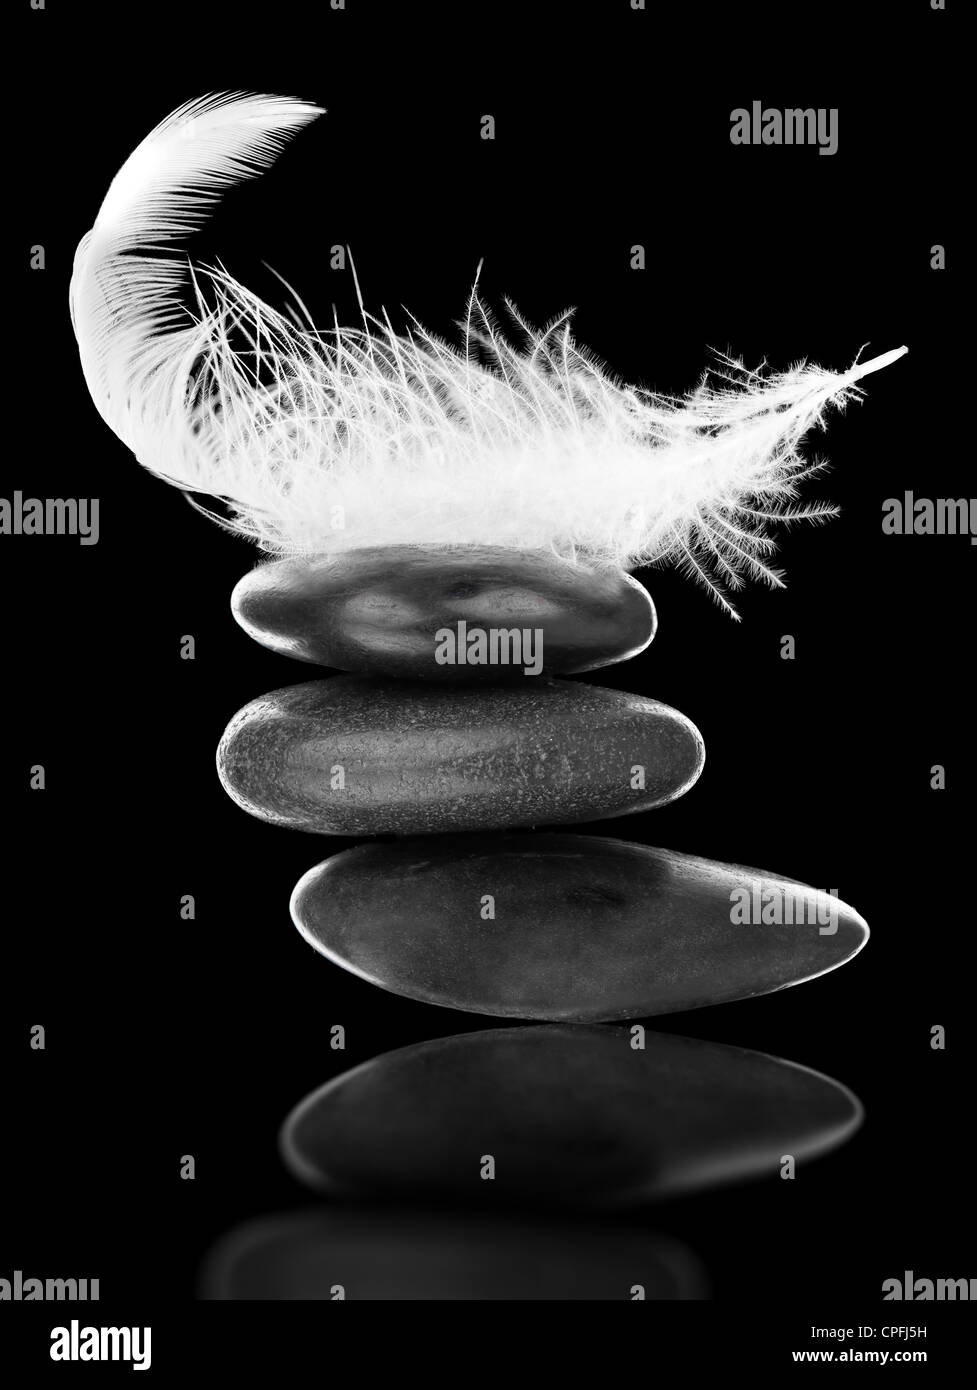 Weiße Feder auf Stapel von schwarzen Kieseln auf schwarzem Hintergrund - Gleichgewicht, Stabilität und Gleichgewicht-Konzept Stockfoto